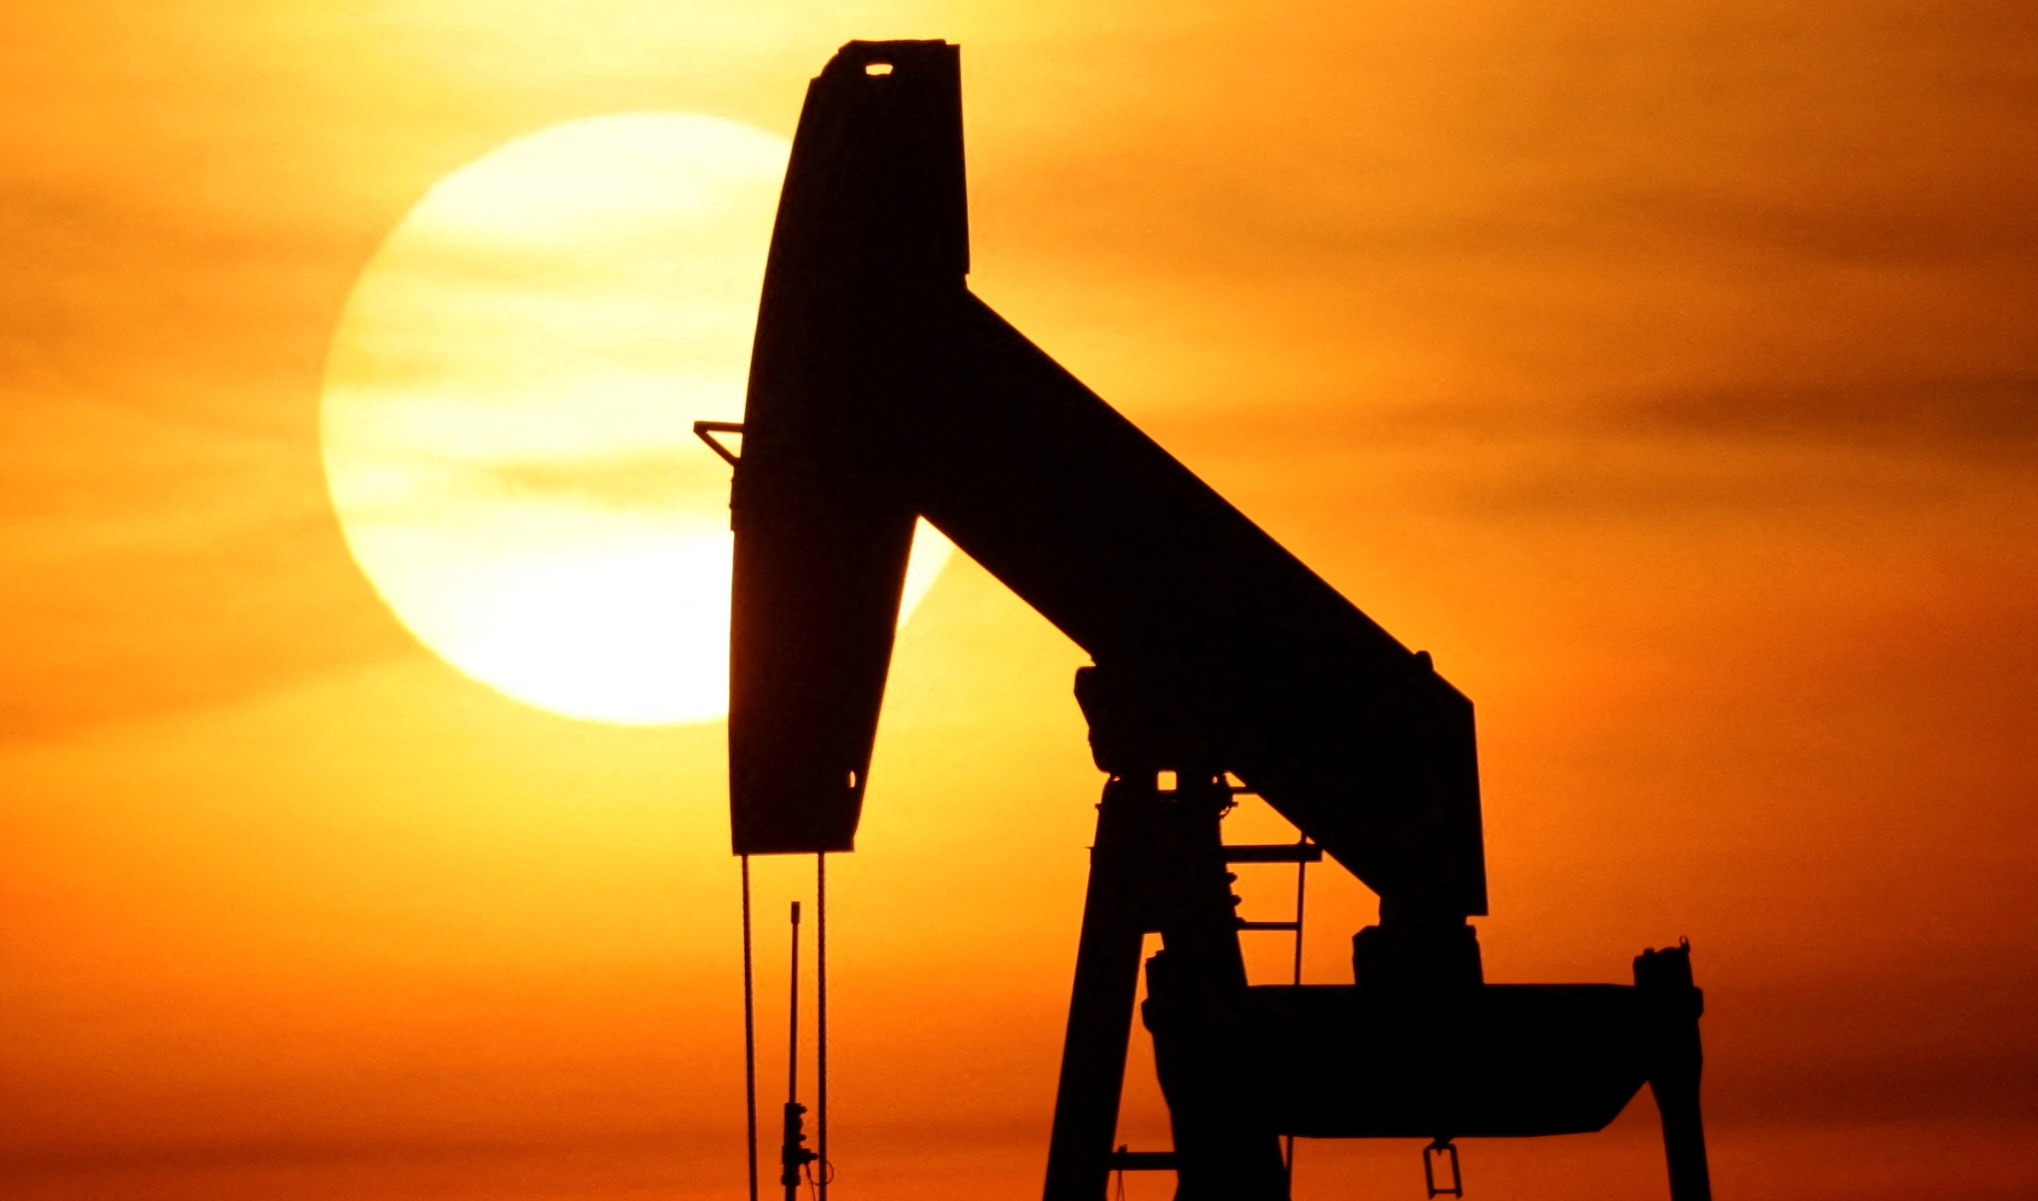 Ρωσία: Πρόταση σε ΟΠΕΚ για μείωση της παραγωγής πετρελαίου κατά ένα εκατομμύριο βαρέλια την ημέρα